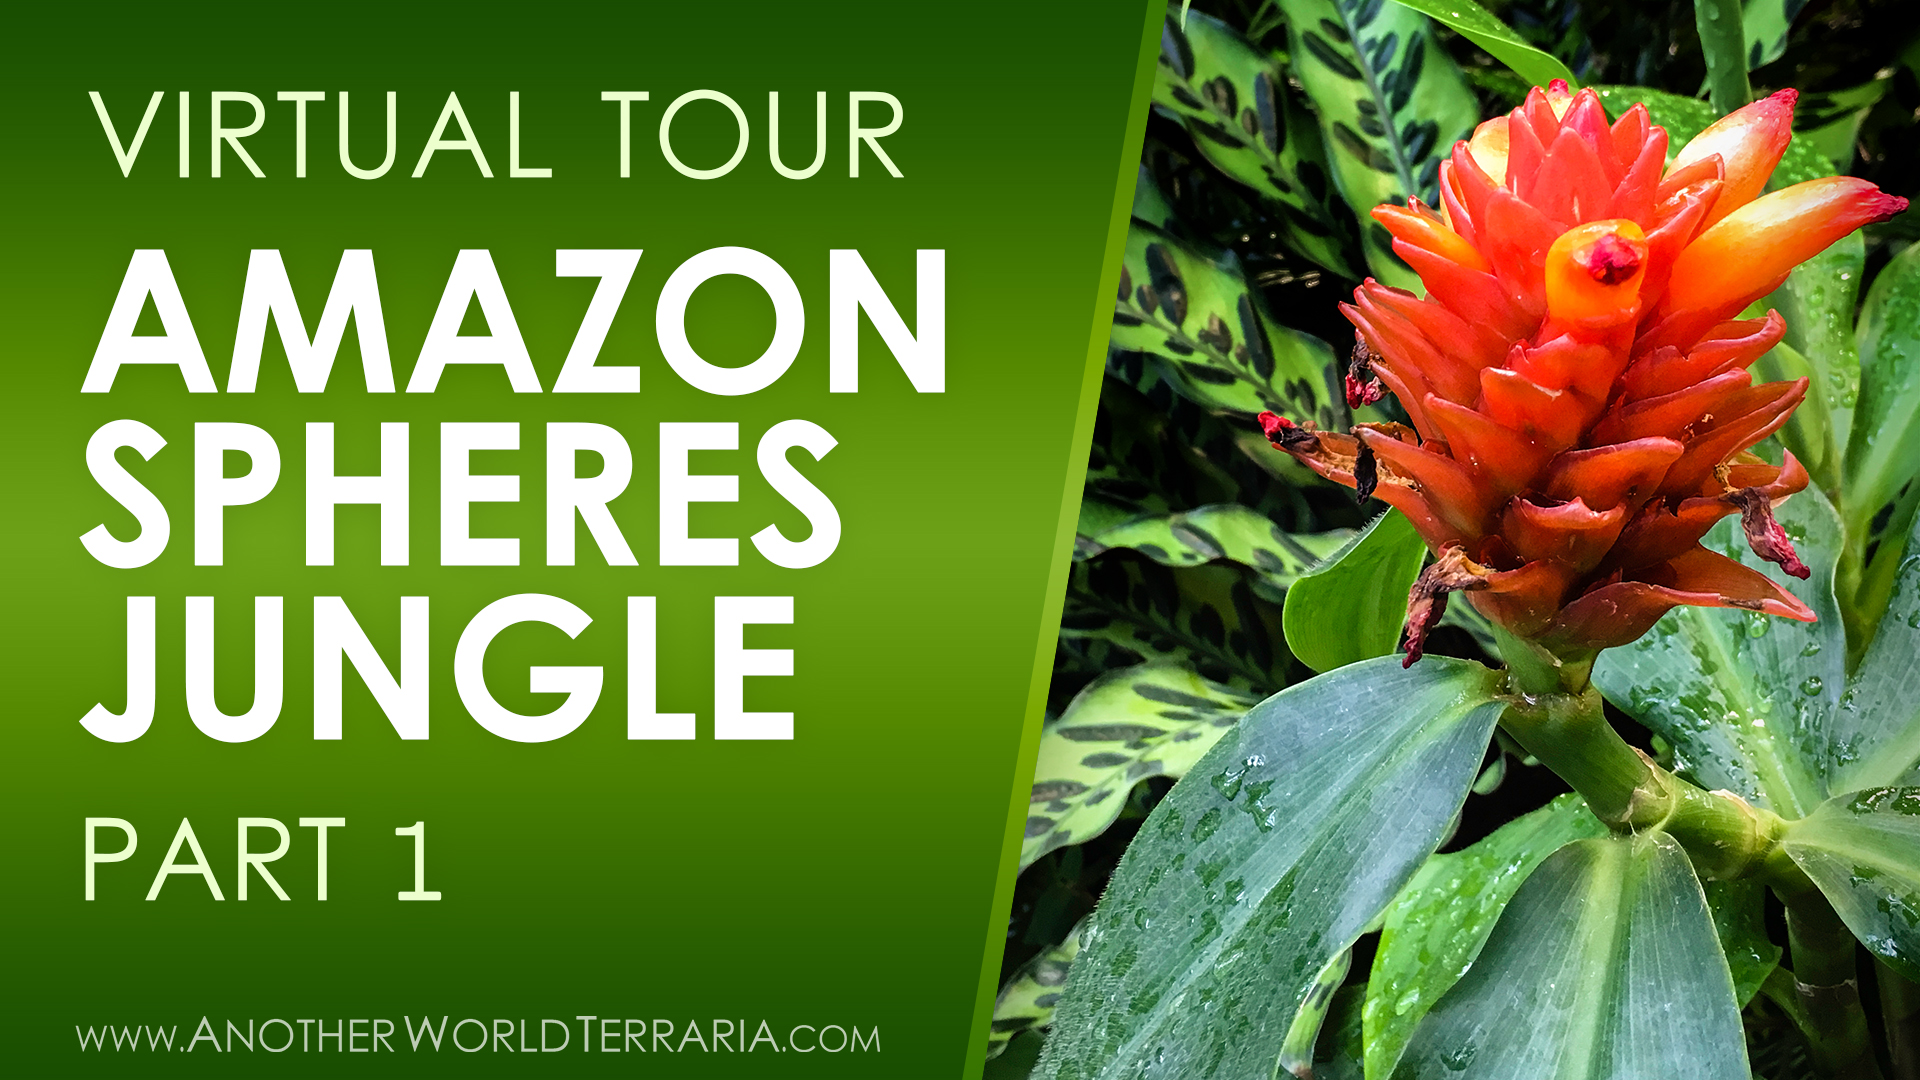 Amazon Spheres Jungle Tour Part 1